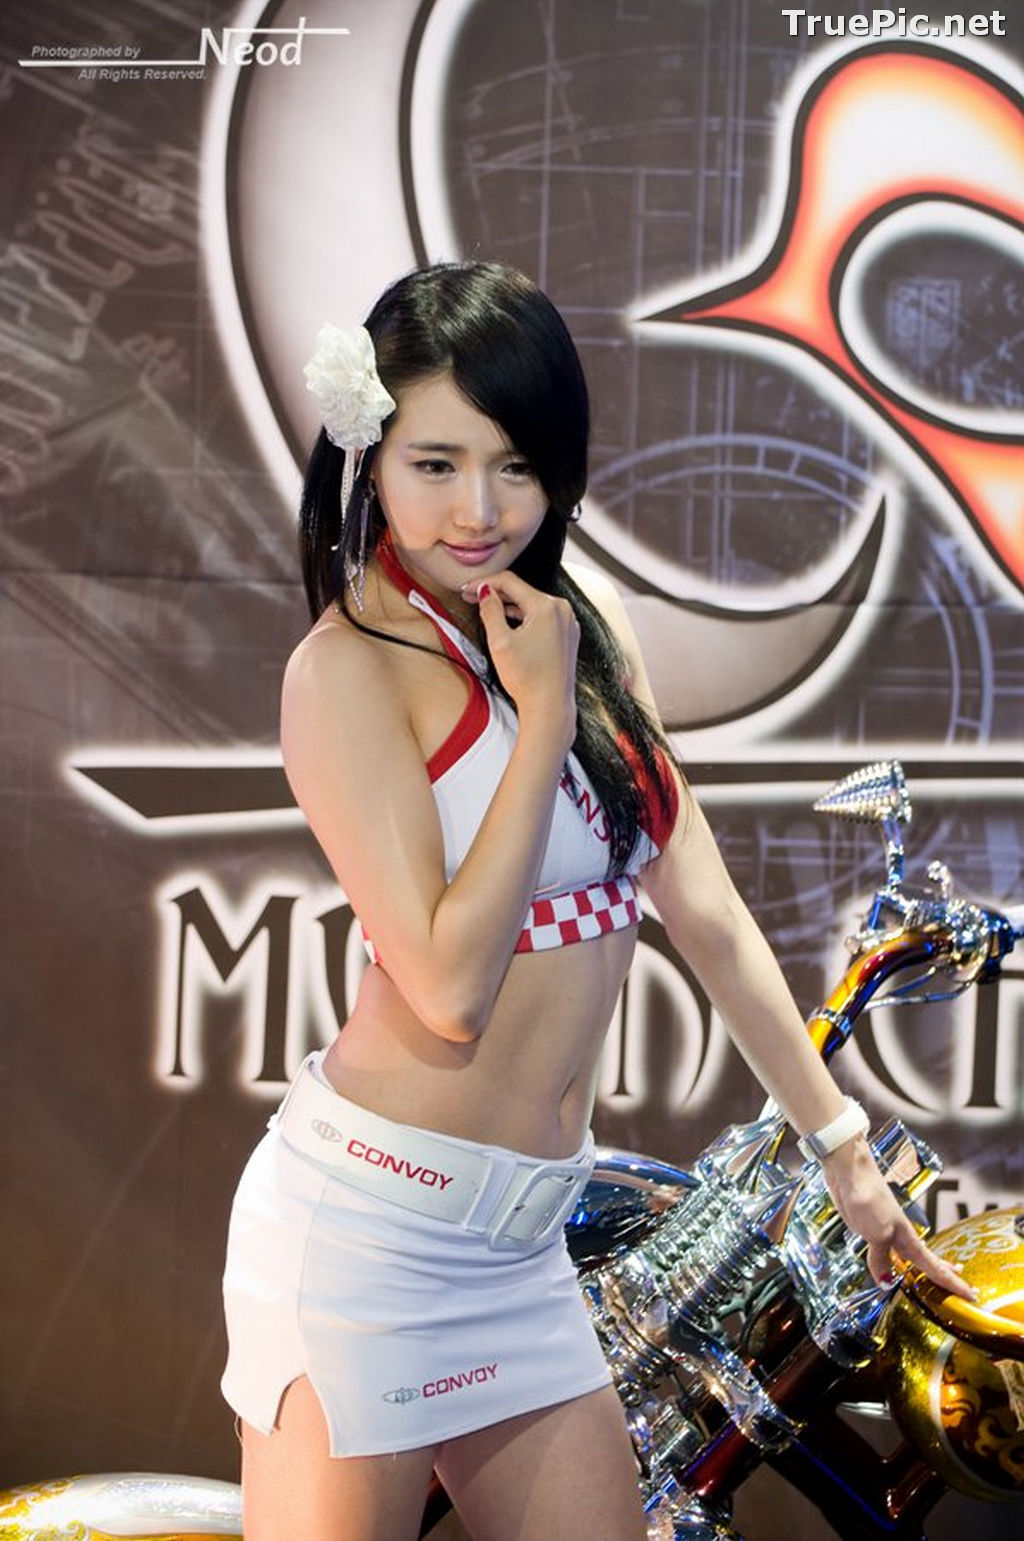 Image Best Beautiful Images Of Korean Racing Queen Han Ga Eun #4 - TruePic.net - Picture-54